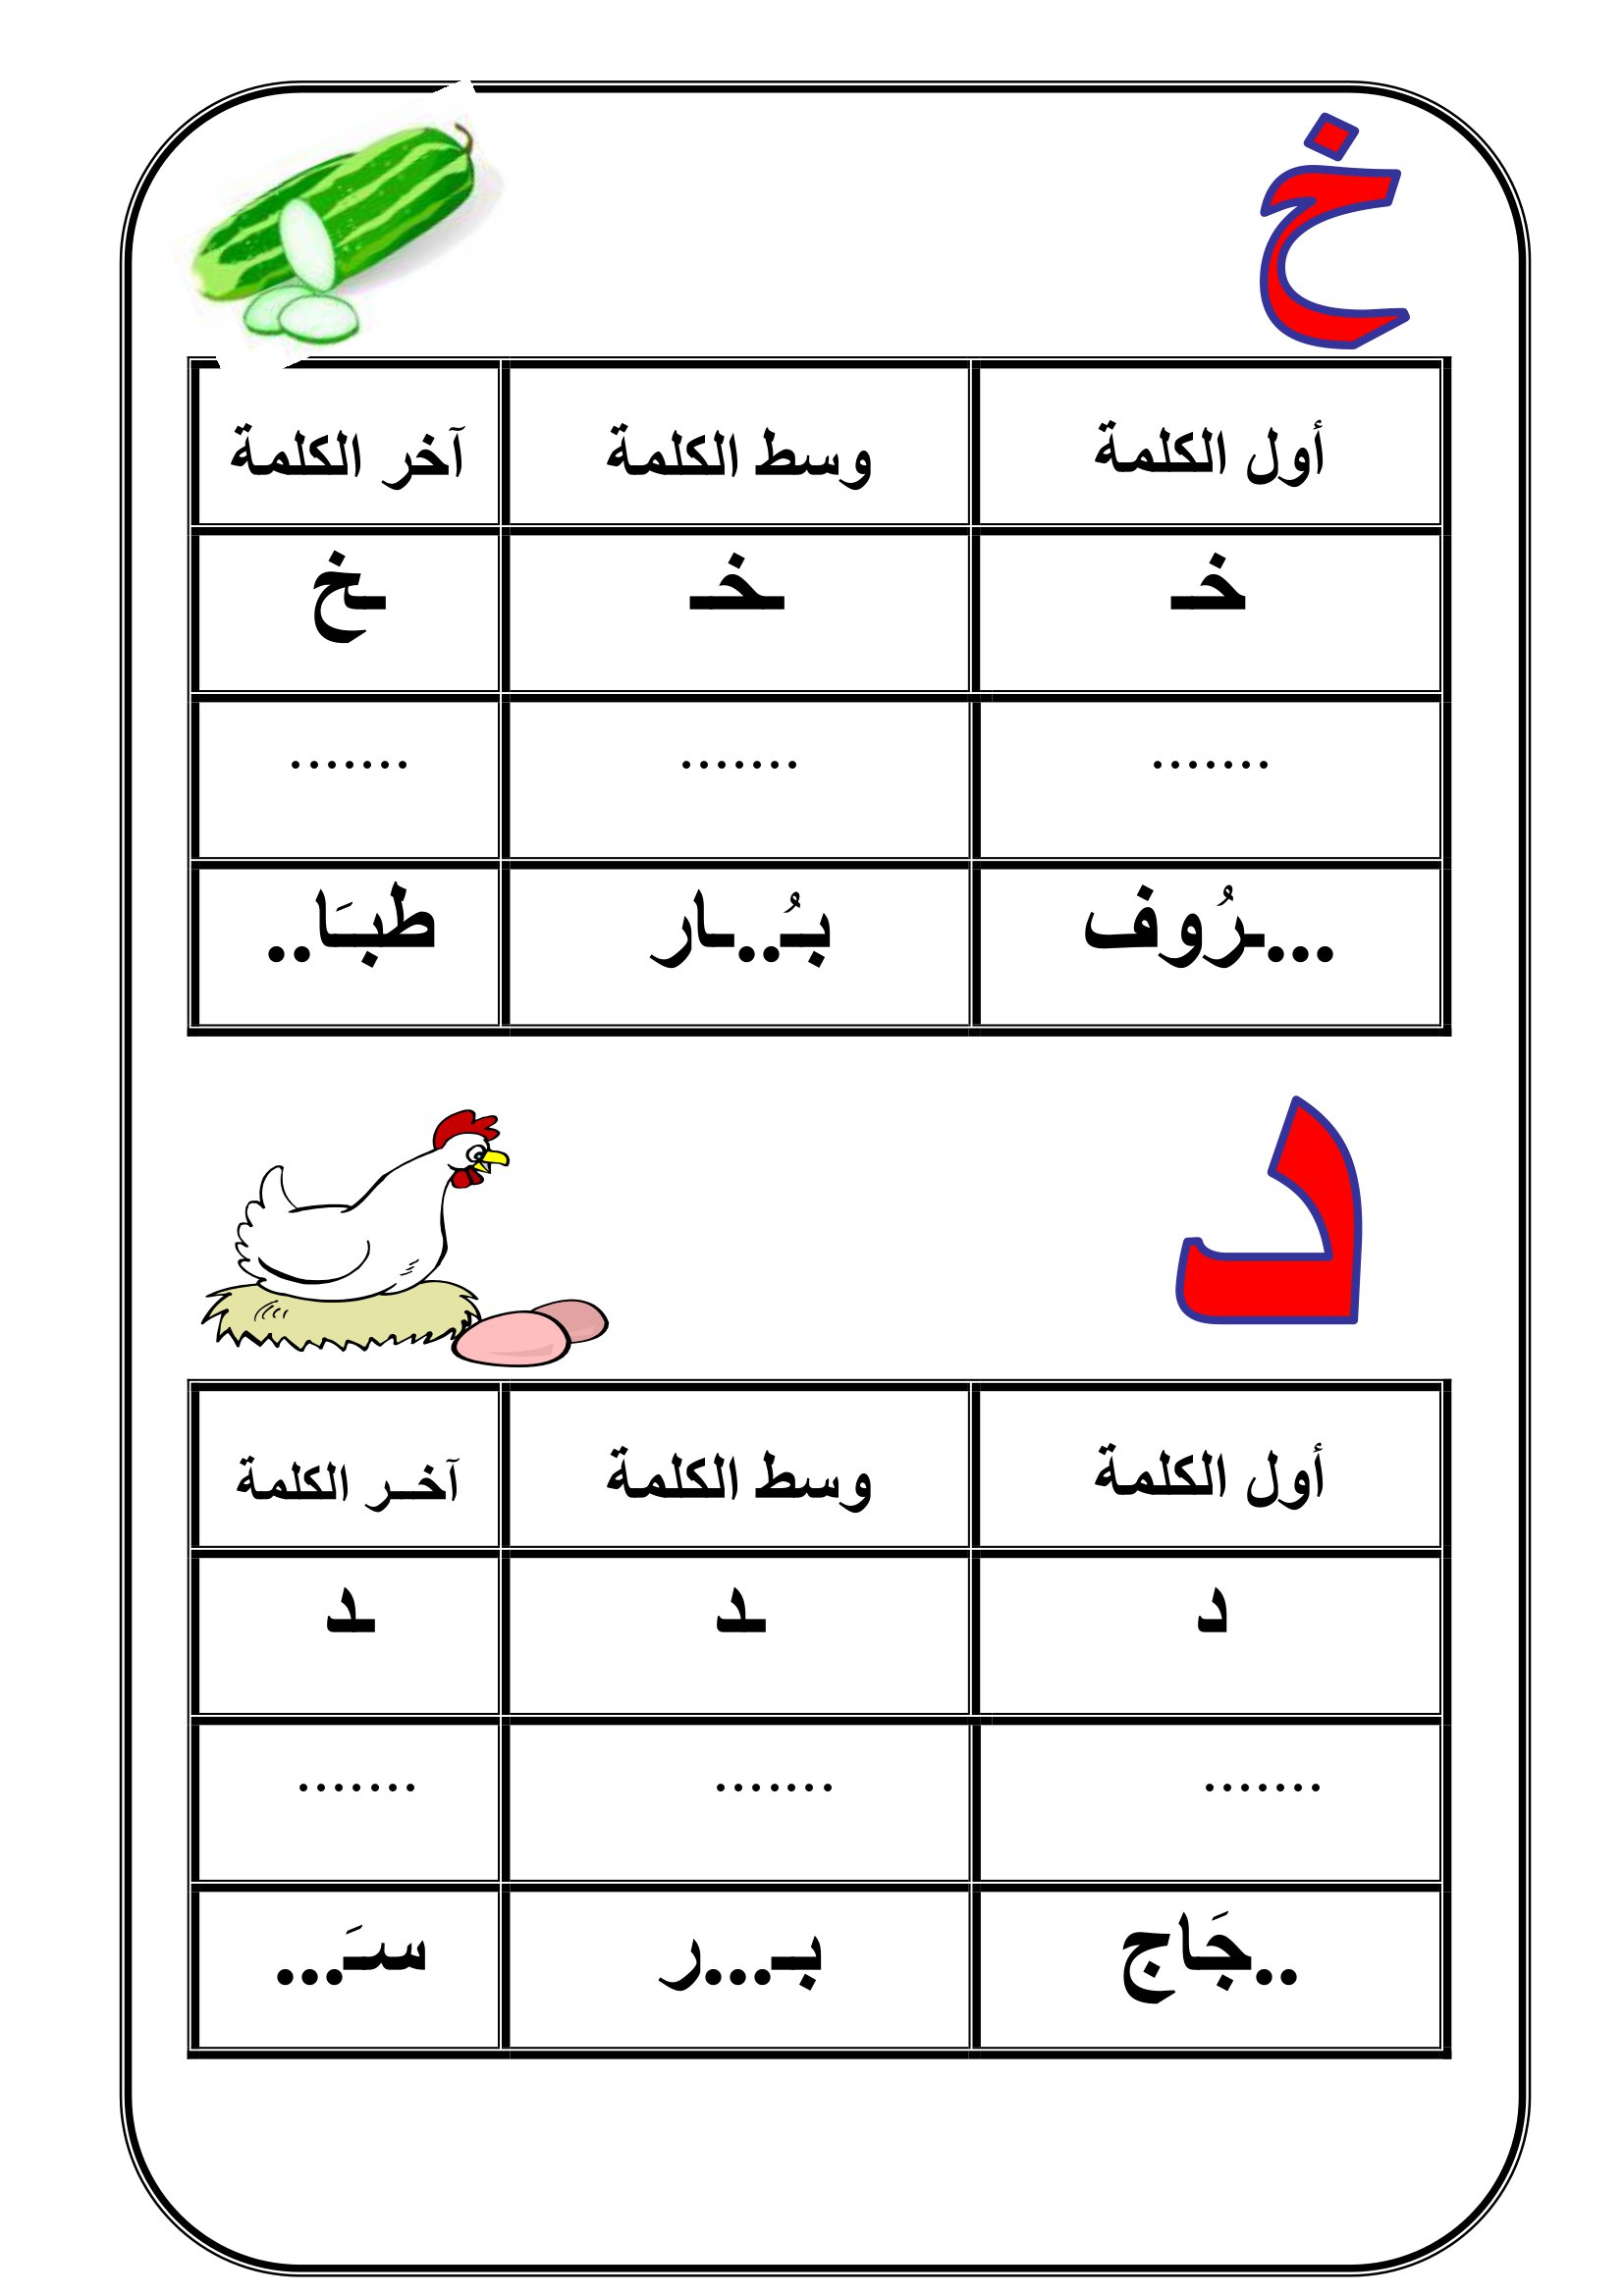 ملزمة تدريبات كتابة الحروف الهجائية بأشكالها وأوضاعها المختلفة pdf تحميل مباشر